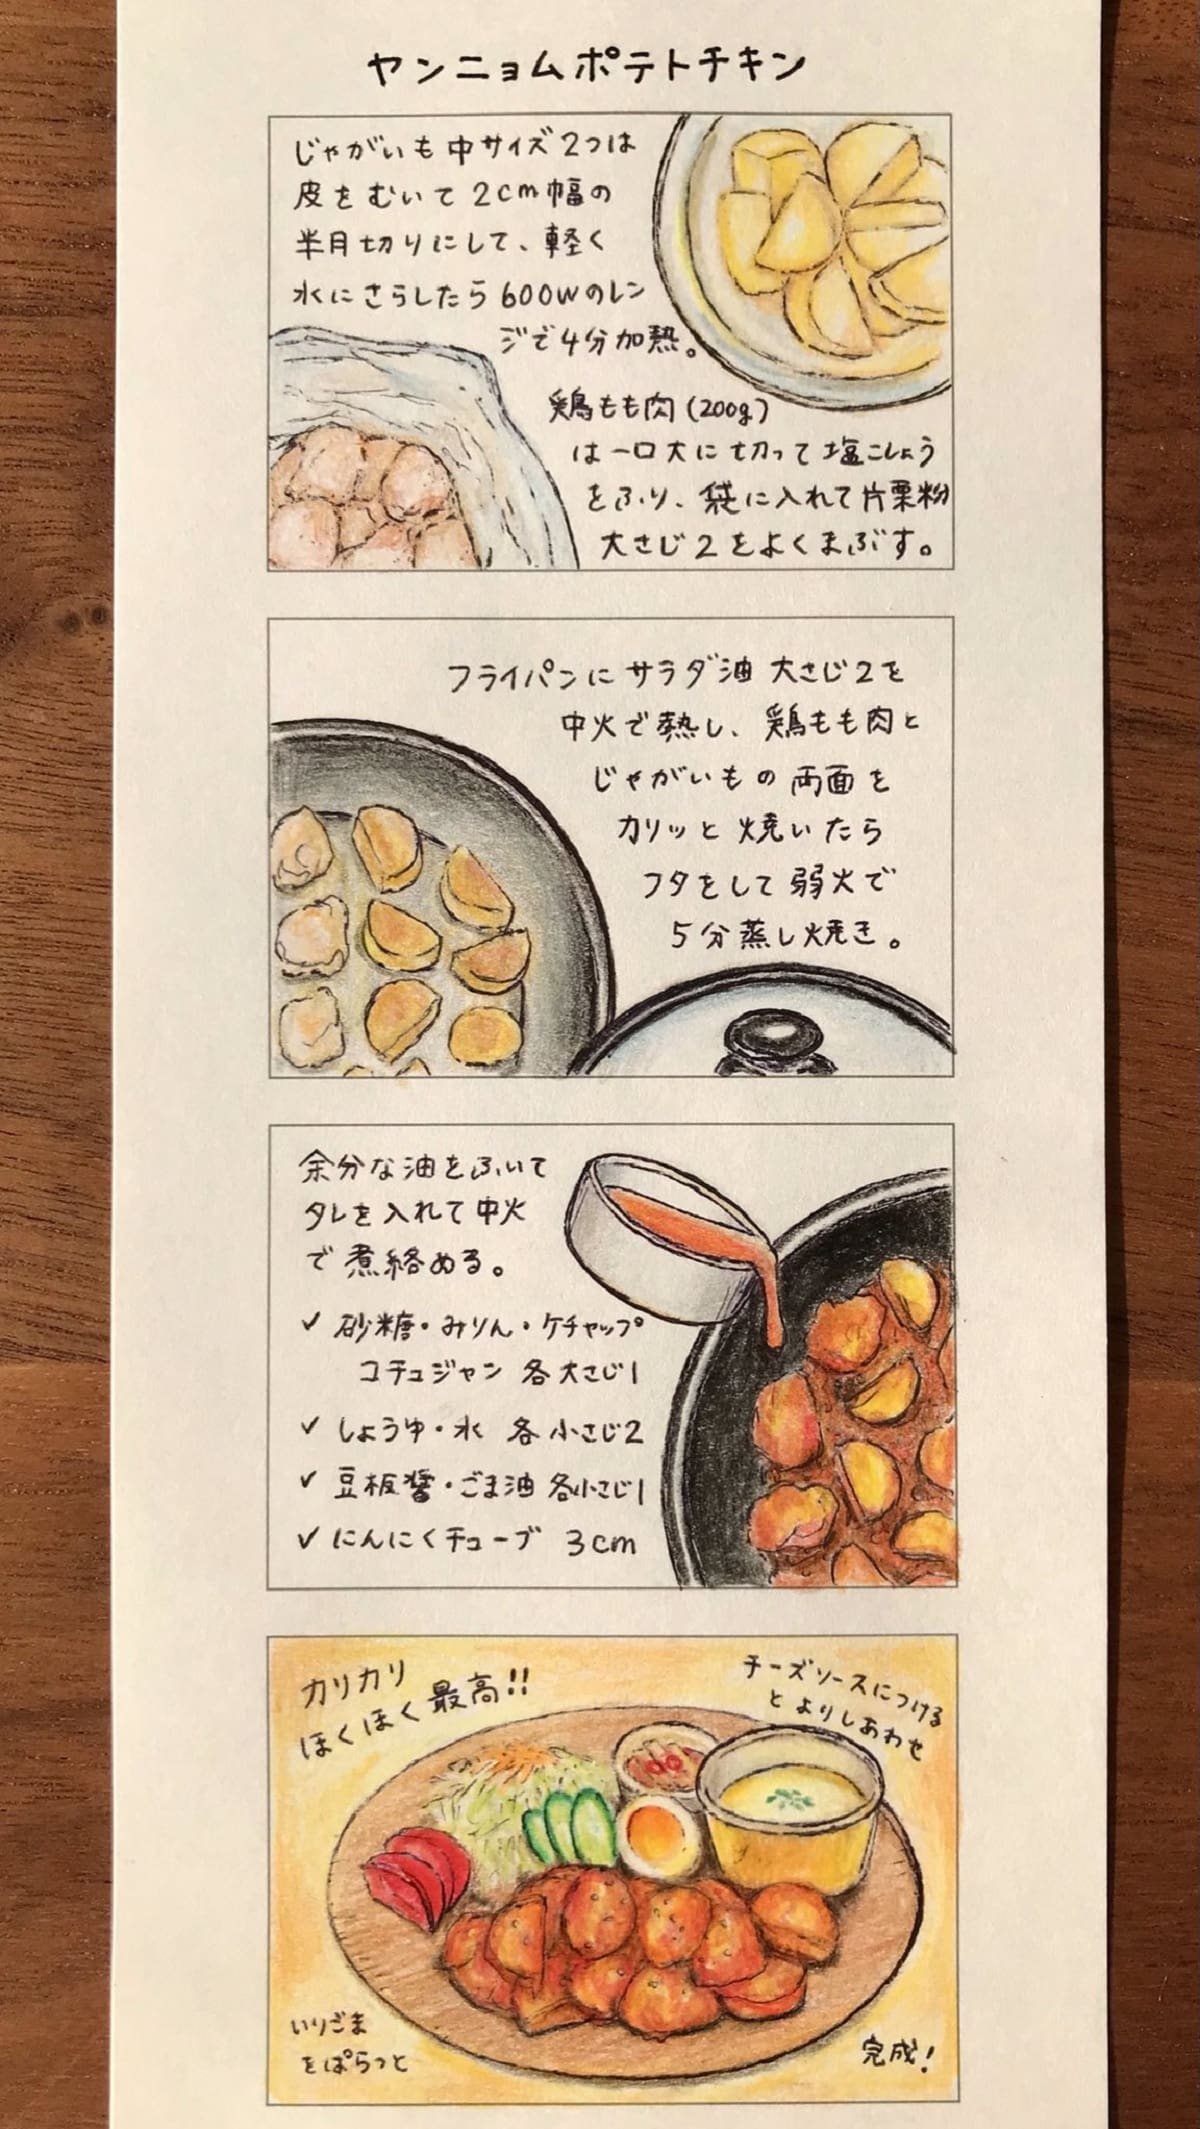 ヤンニョムポテトチキンの作り方